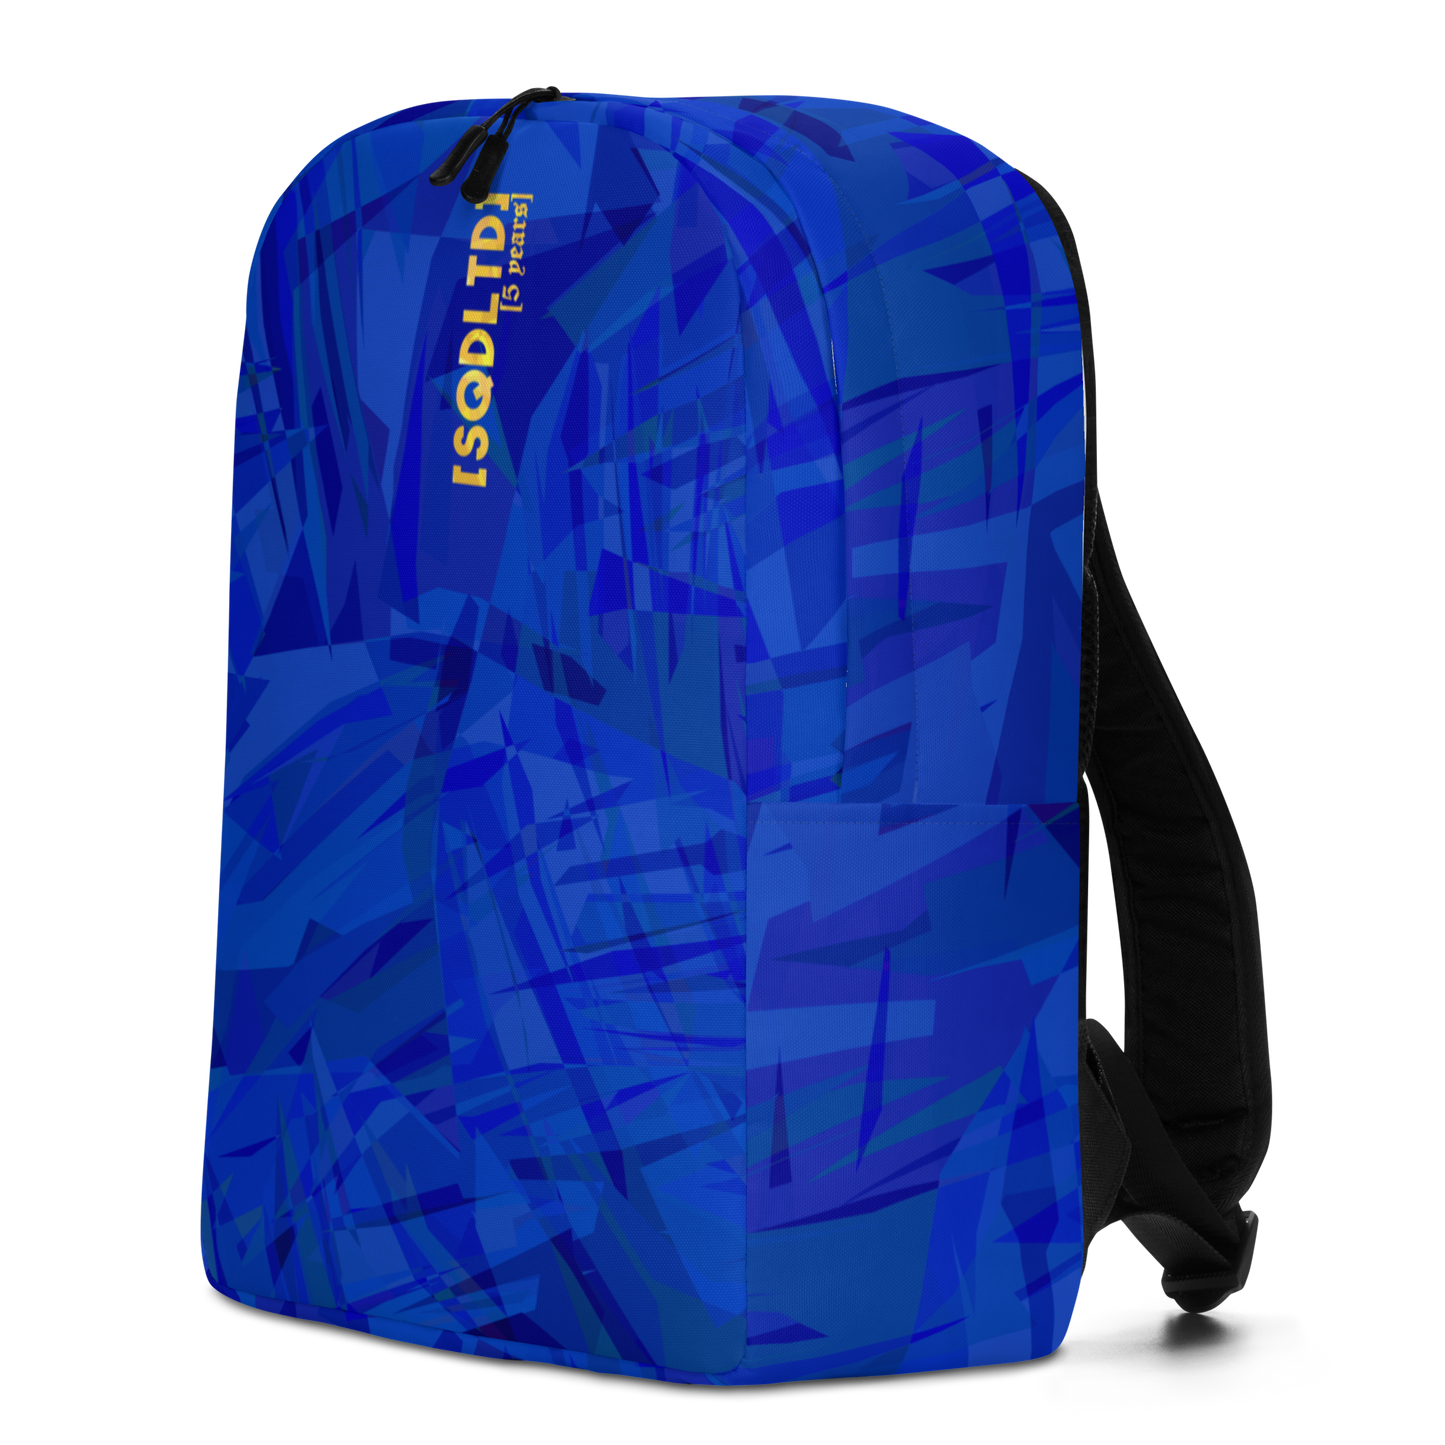 Sqdltd Starburst BLU Minimalist Backpack